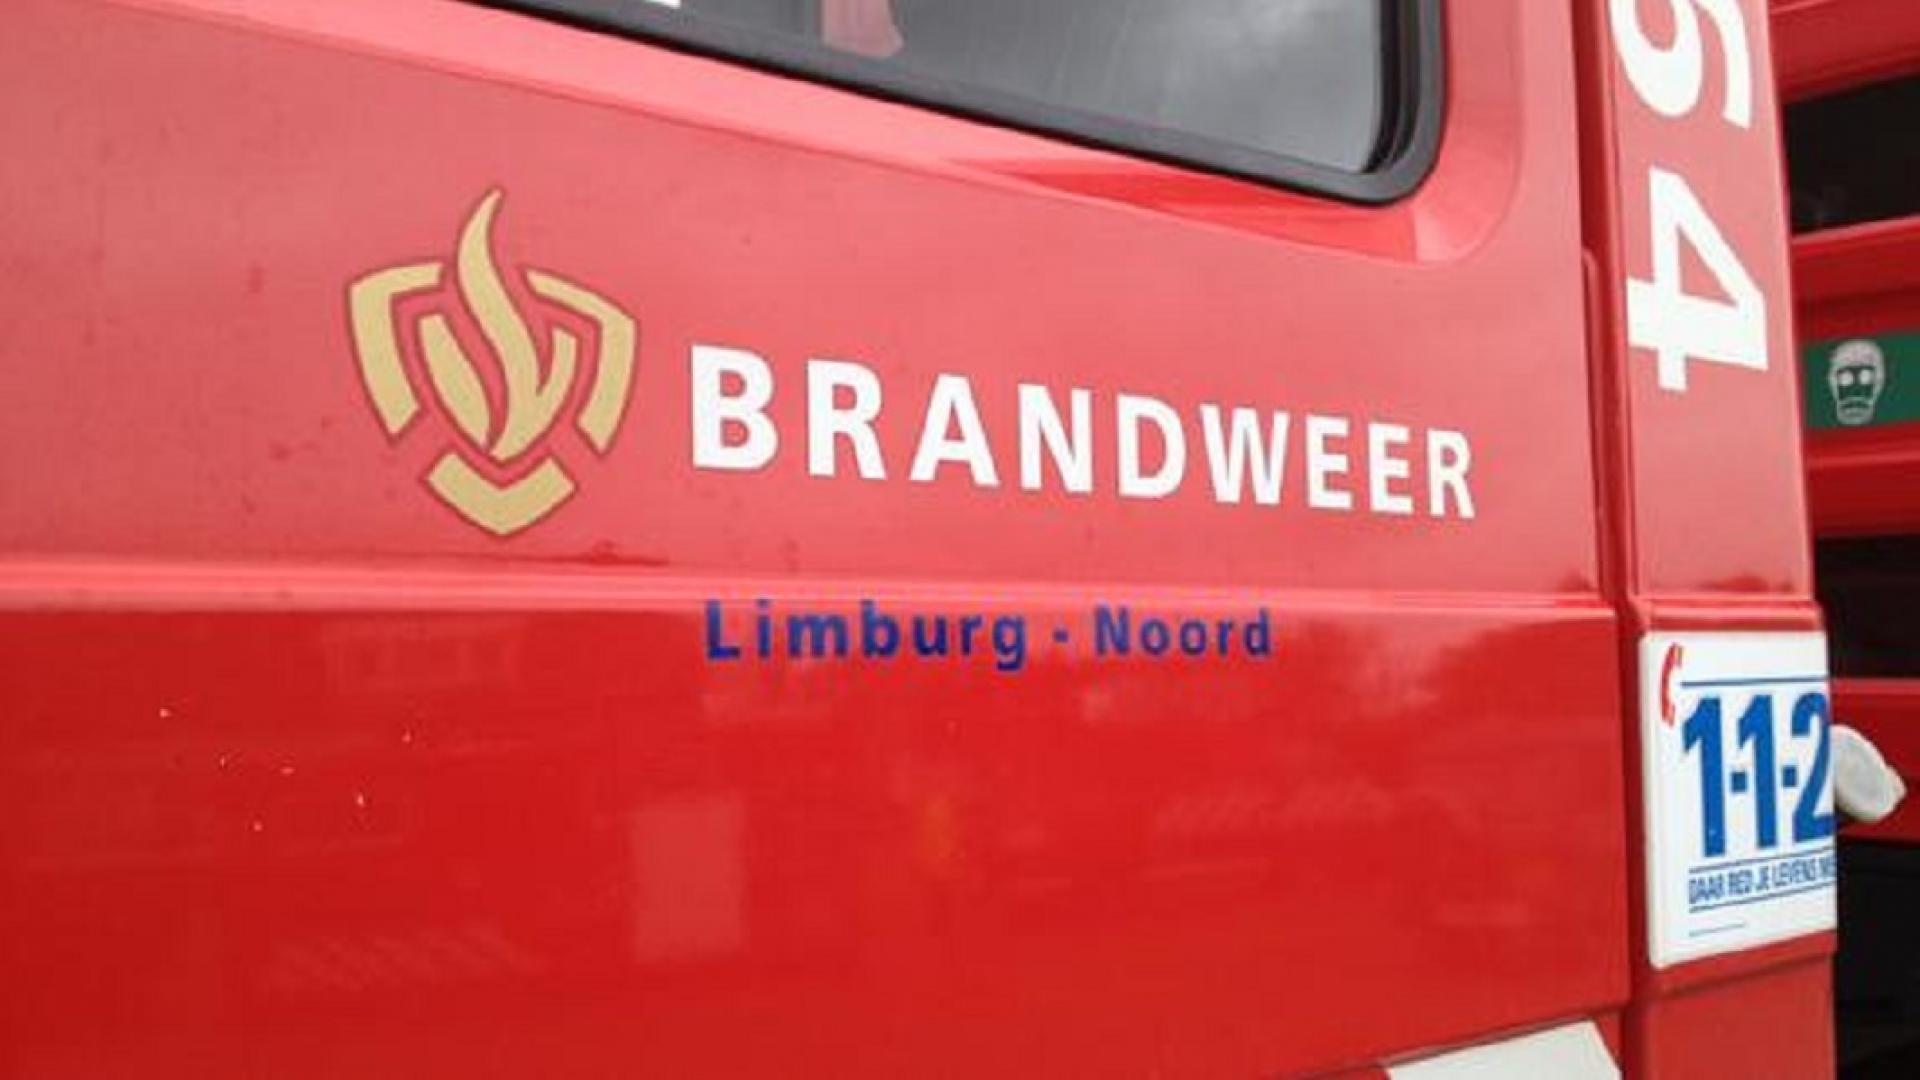 brandweer_limburg-noord_l1.jpg